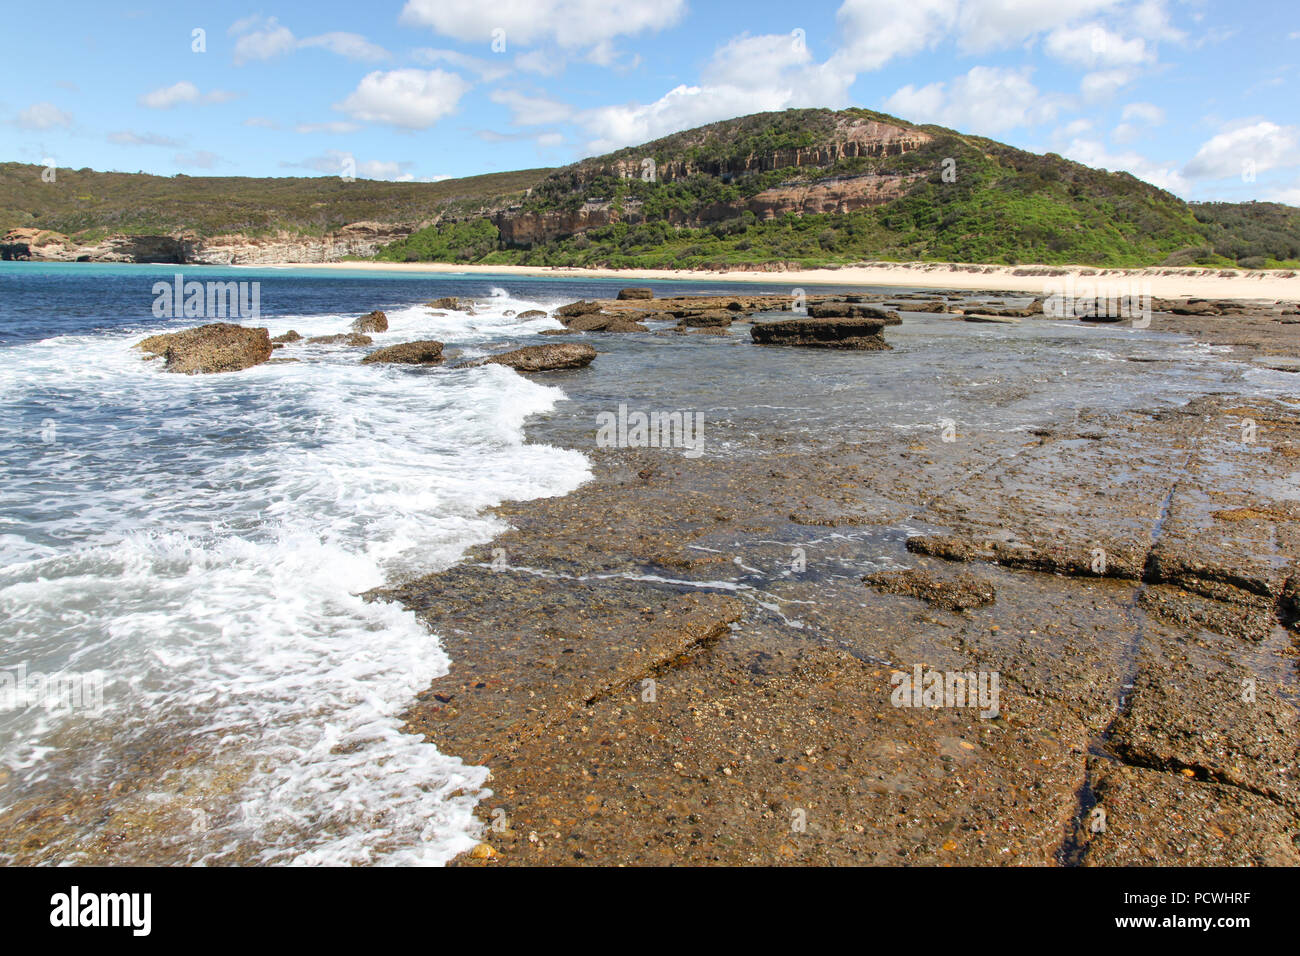 L'ensemble de la vague de rochers à roche plate au sud de Moonee - Catherine Hill Bay, sur la côte centrale de la Nouvelle-Galles du Sud. Banque D'Images